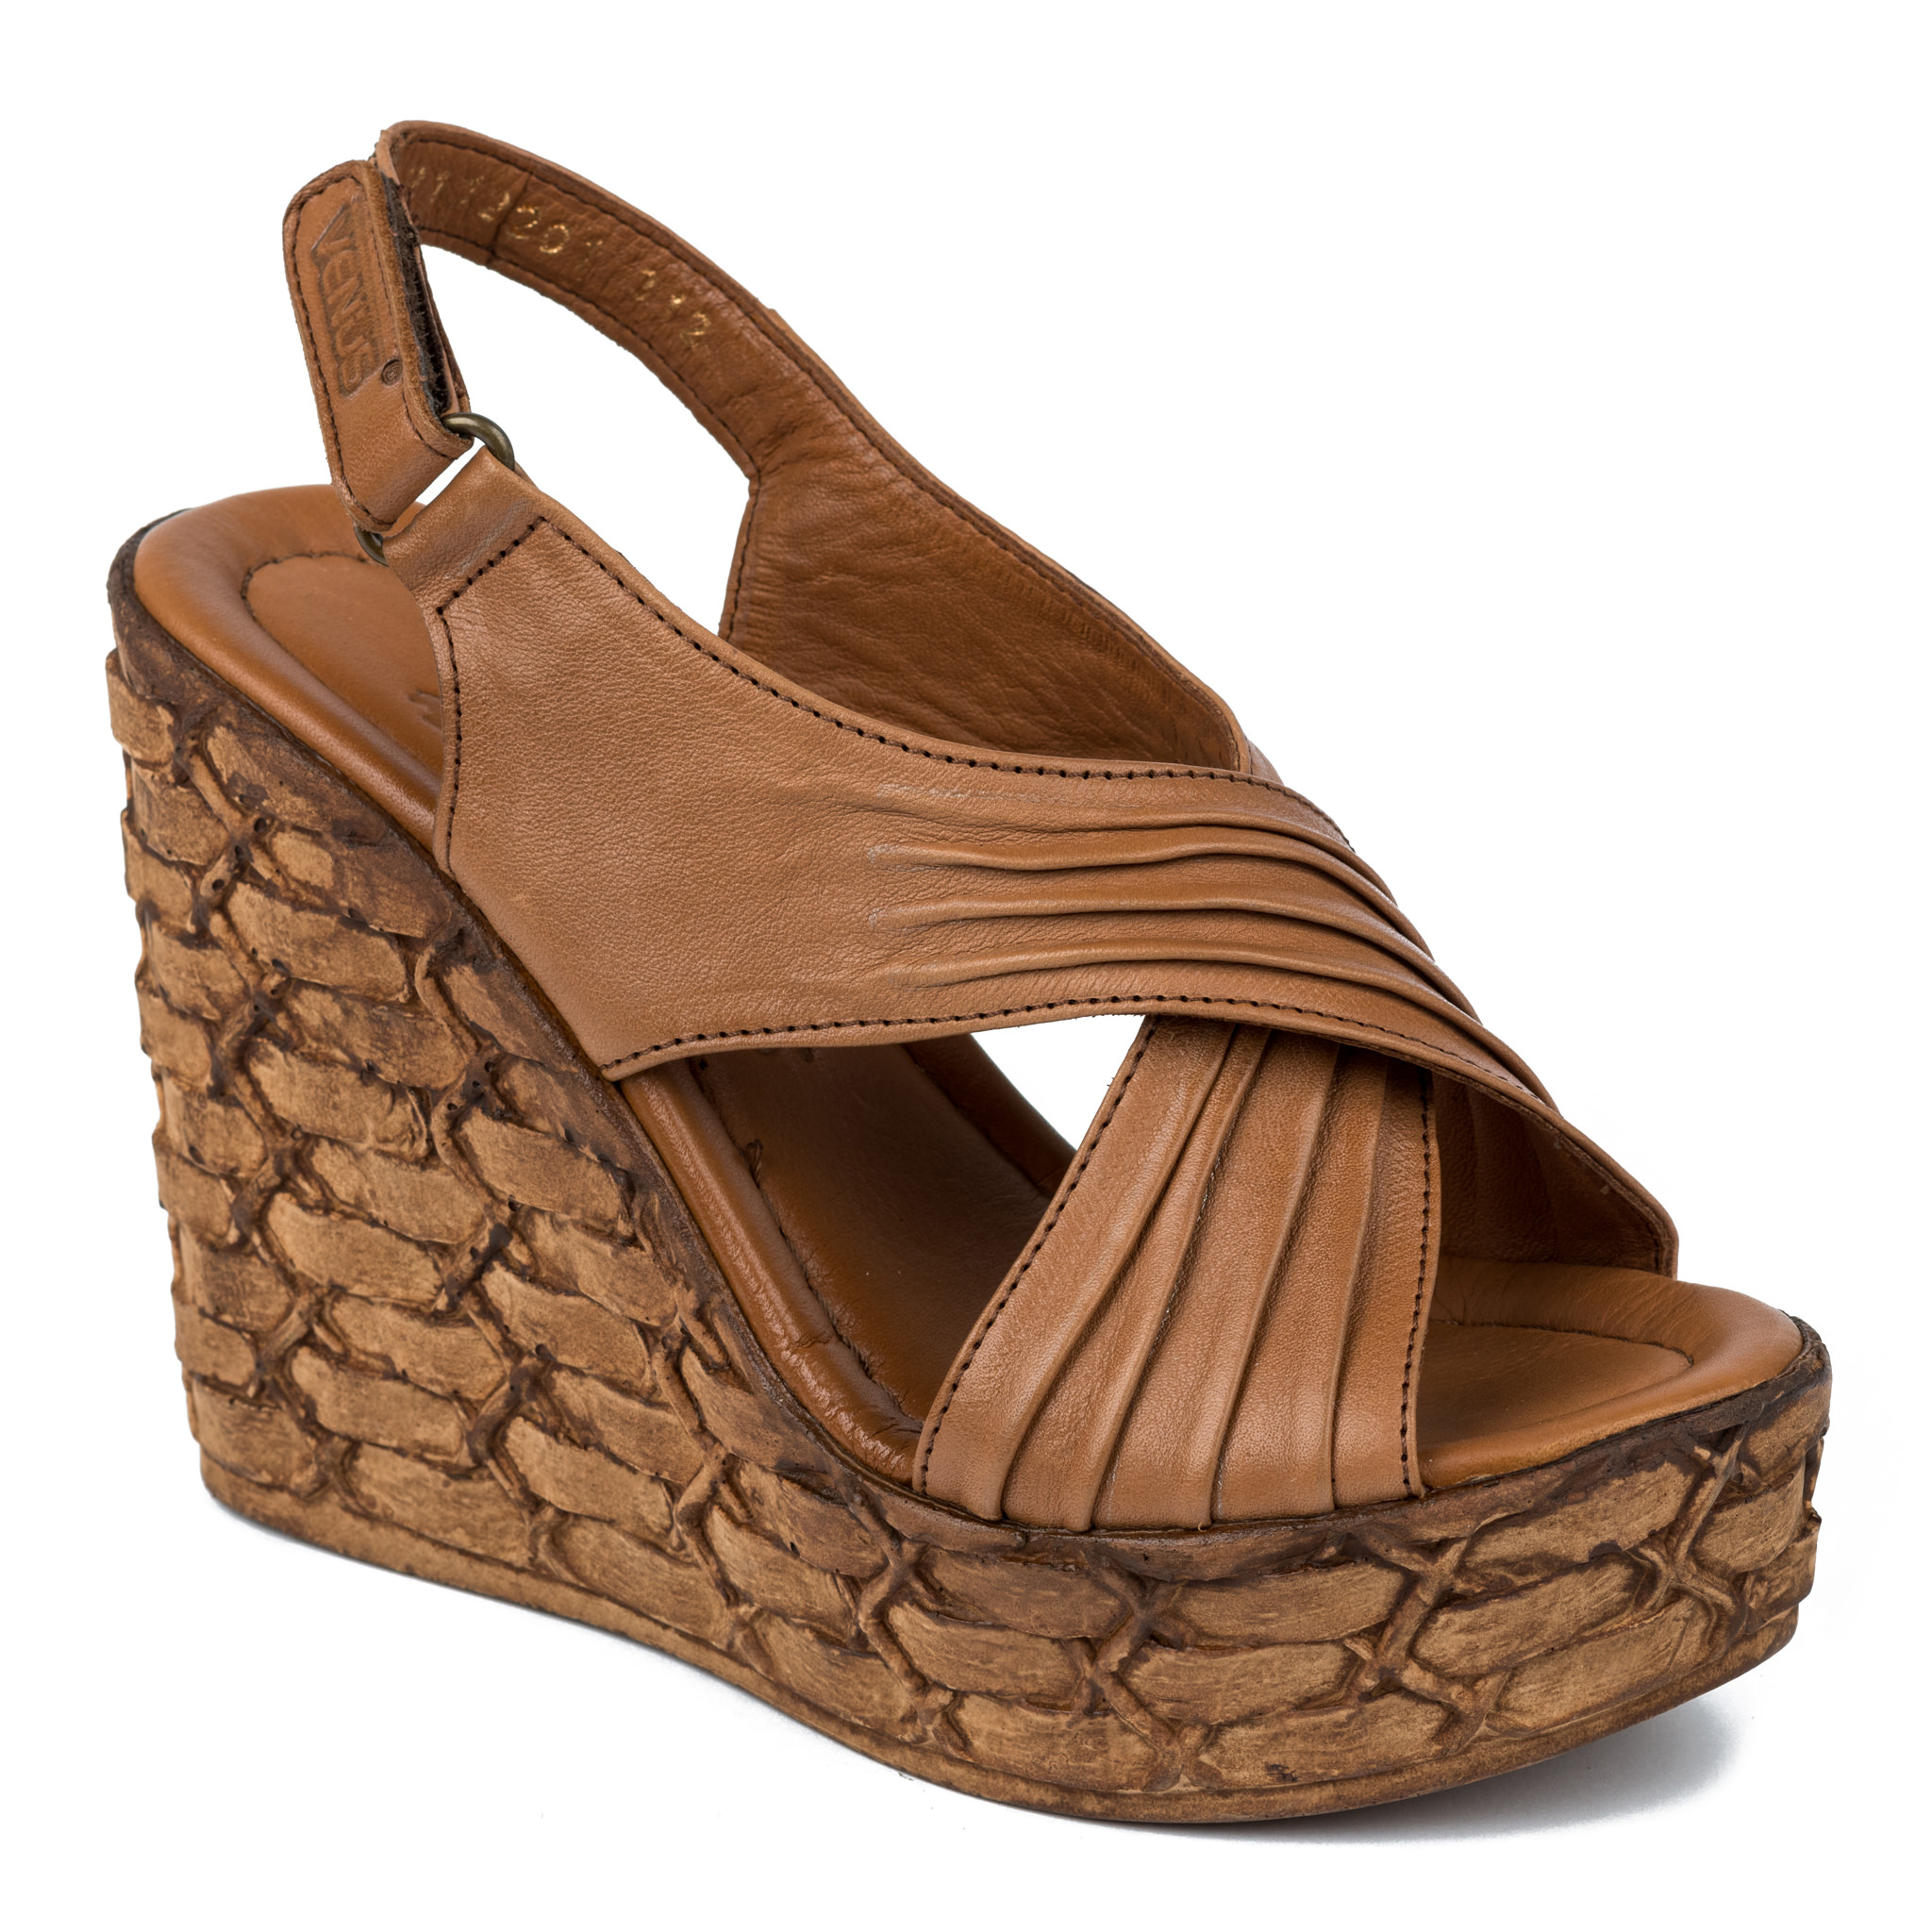 Women sandals A256 - CAMEL